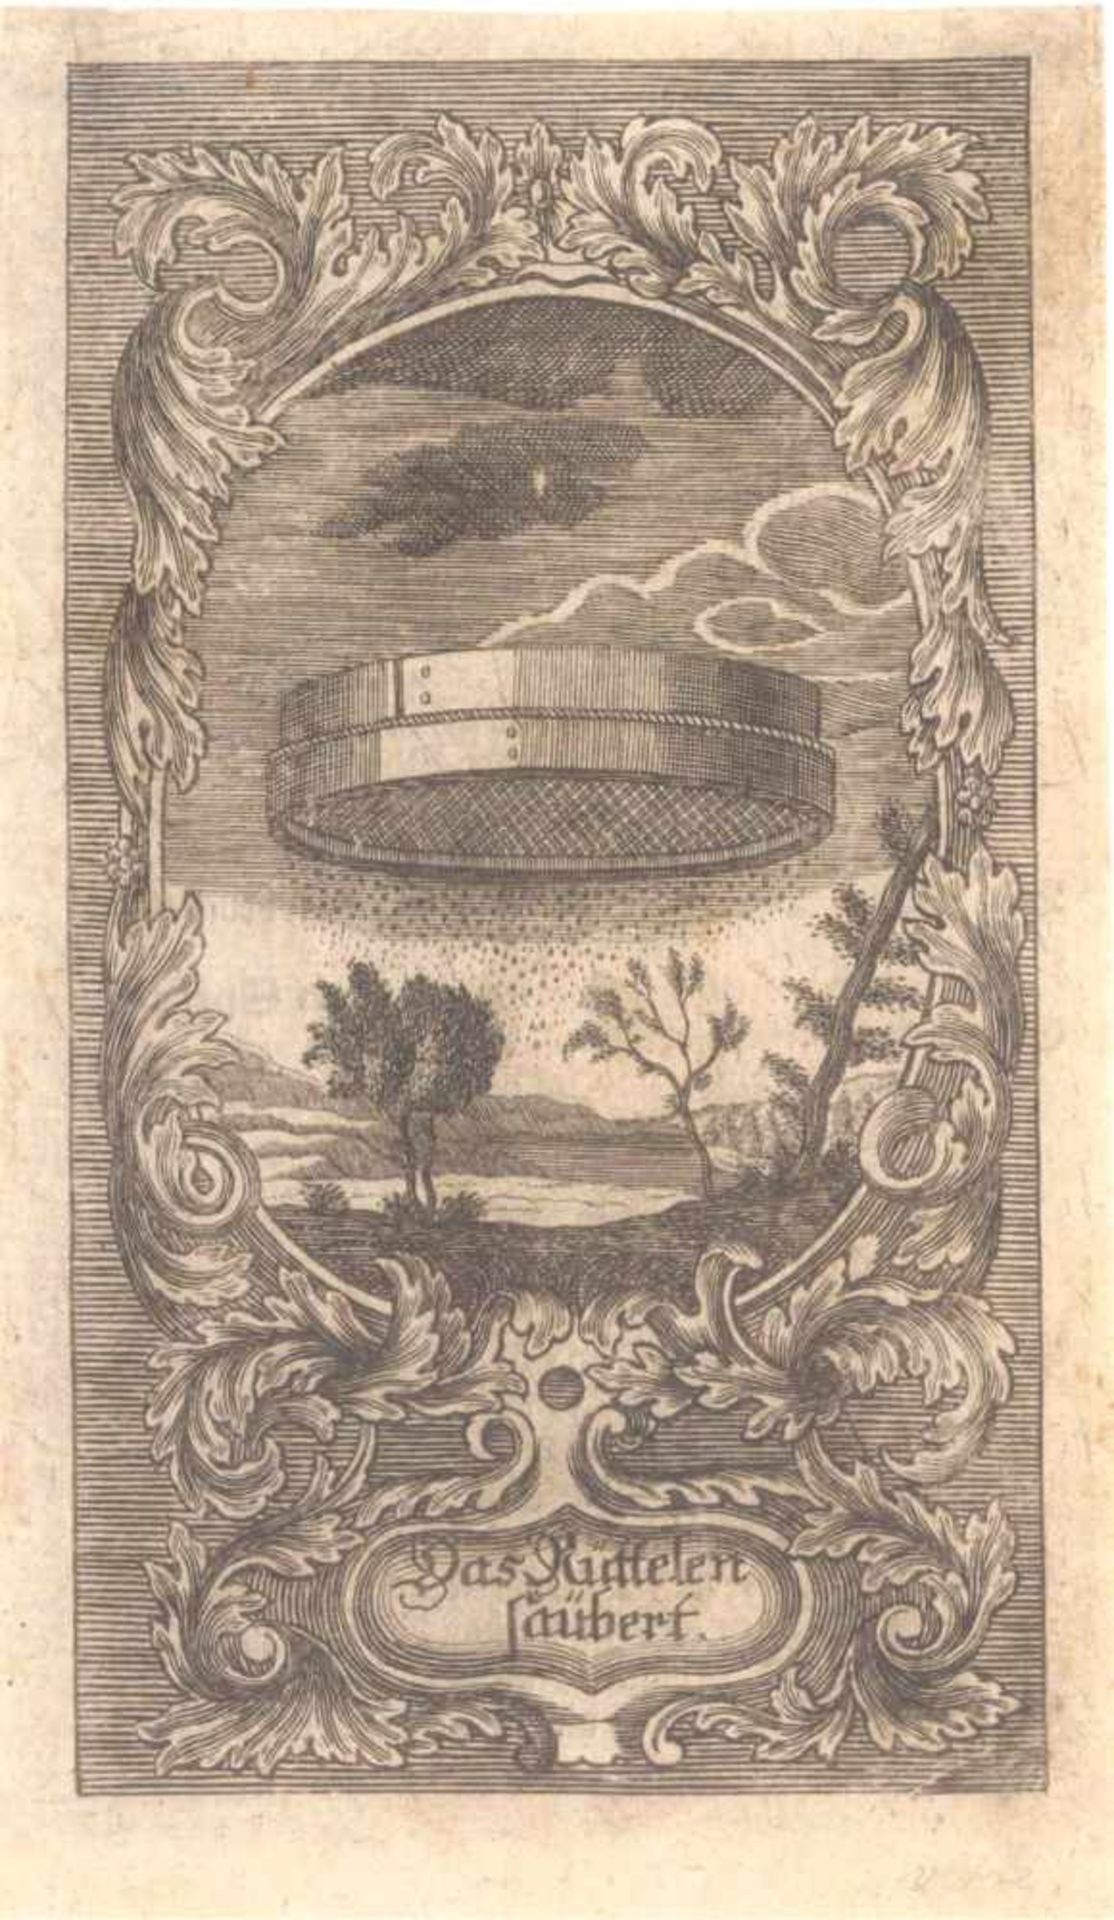 Joseph Wagner (1706-1780) Berufe- Landwirtschaft und MühlenDreschmühle, sowie Rütelsieb- - Bild 4 aus 6